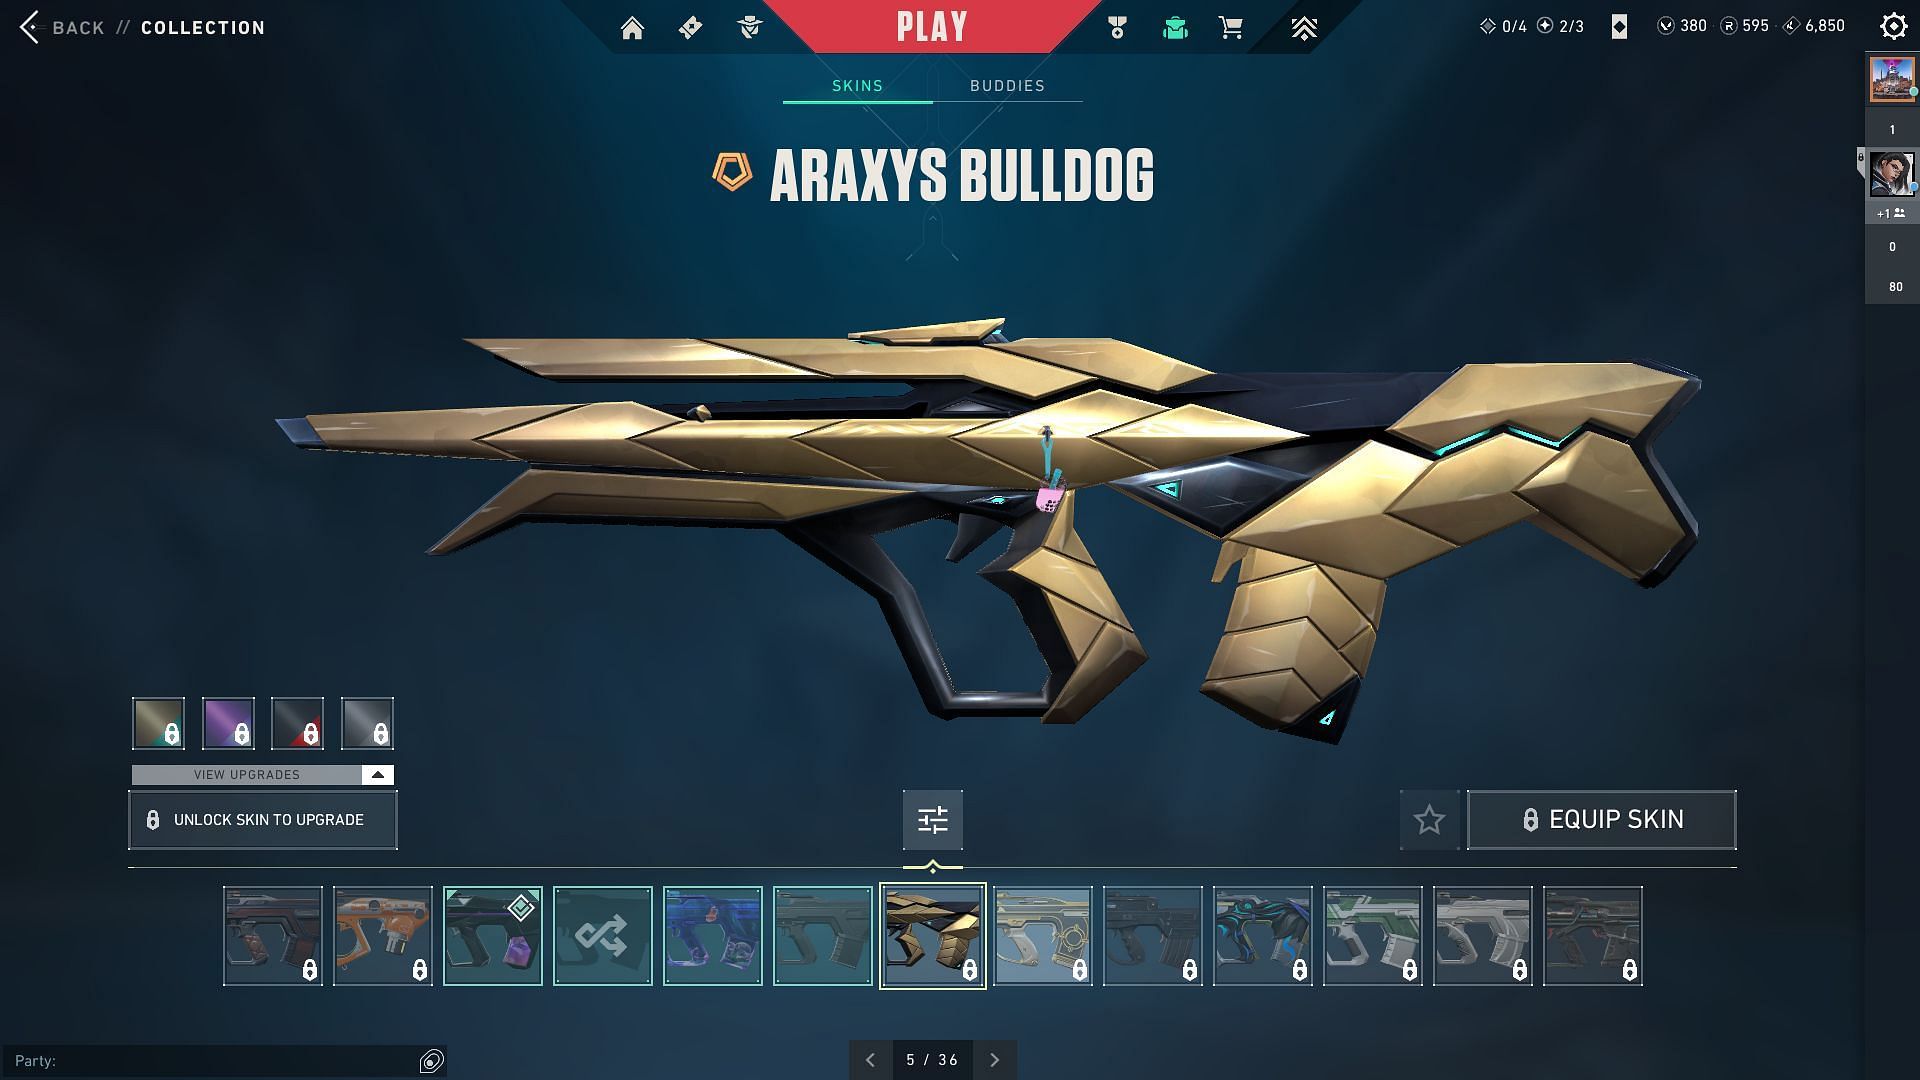 Araxys Bulldog (Image via Riot Games)